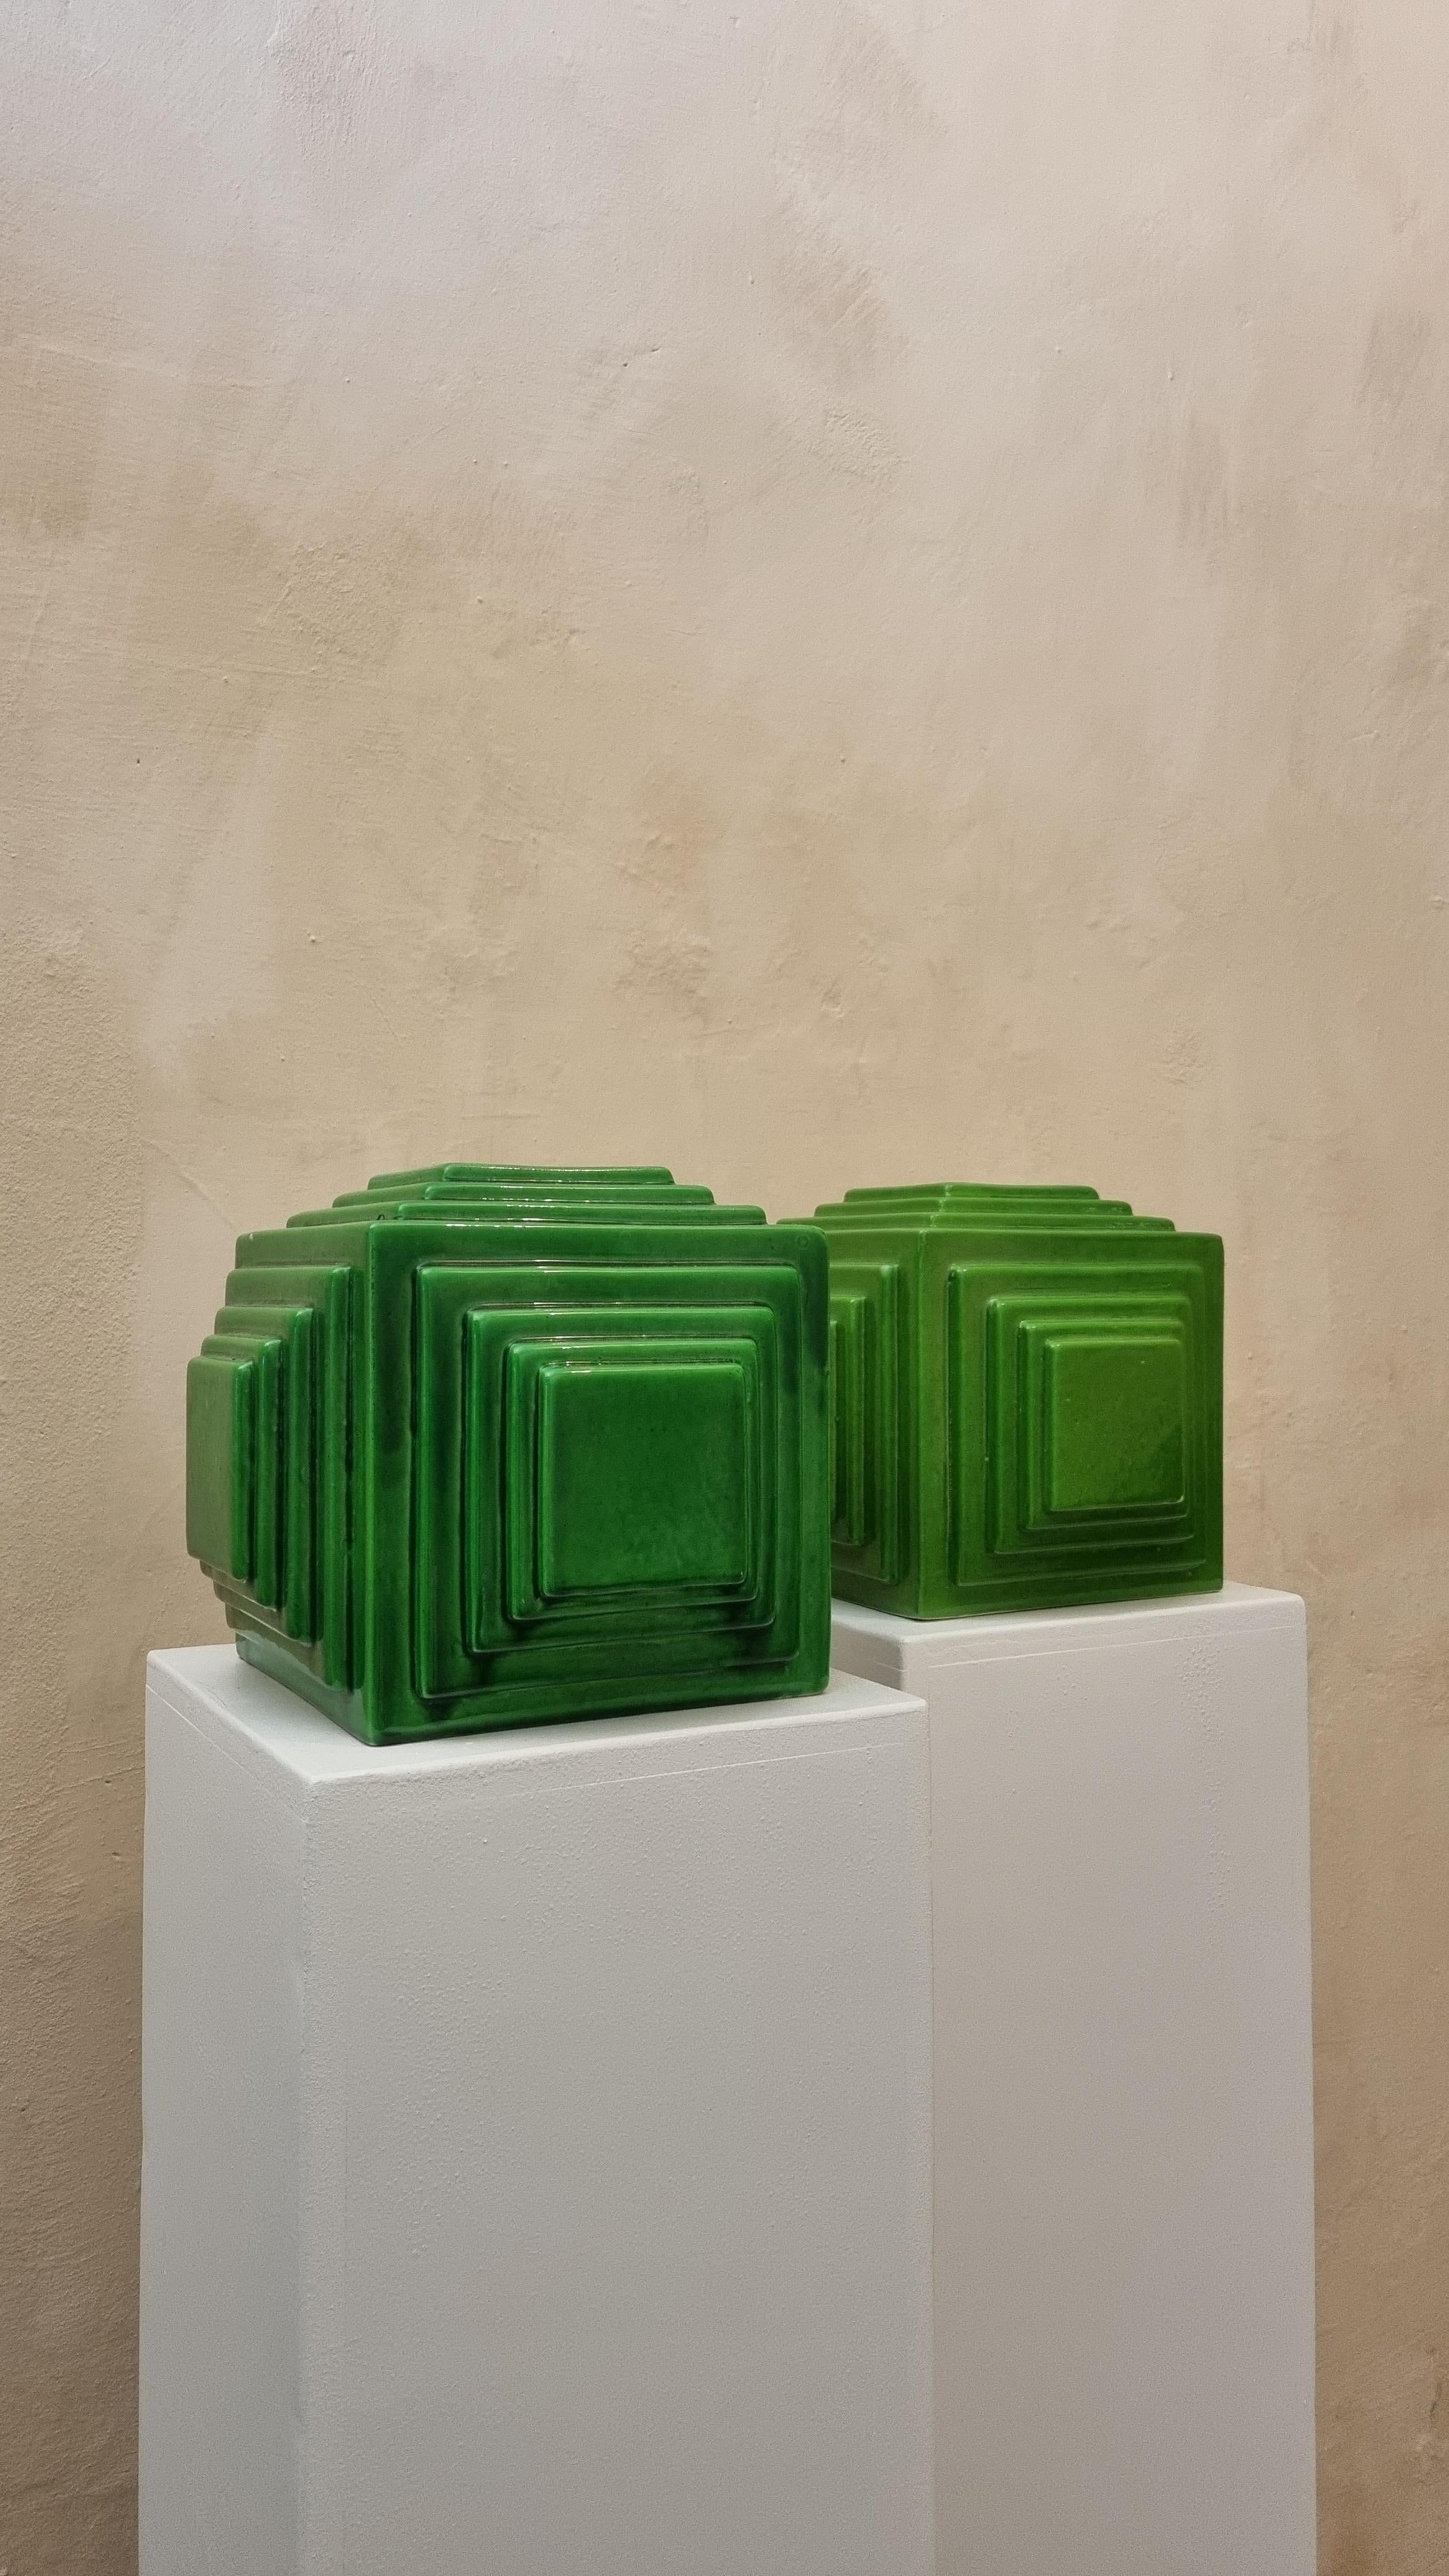 Satz von 2 Keramik-Pflanzgefäßen, hergestellt von Ceramiche Bitossi Montelupo, 70er Jahre.
Glasierte Keramik, grüner Bilddekor.
Jedes von Bitossi geschaffene Werk folgt einem sehr komplexen Arbeitsprozess, sowohl im formalen als auch im dekorativen